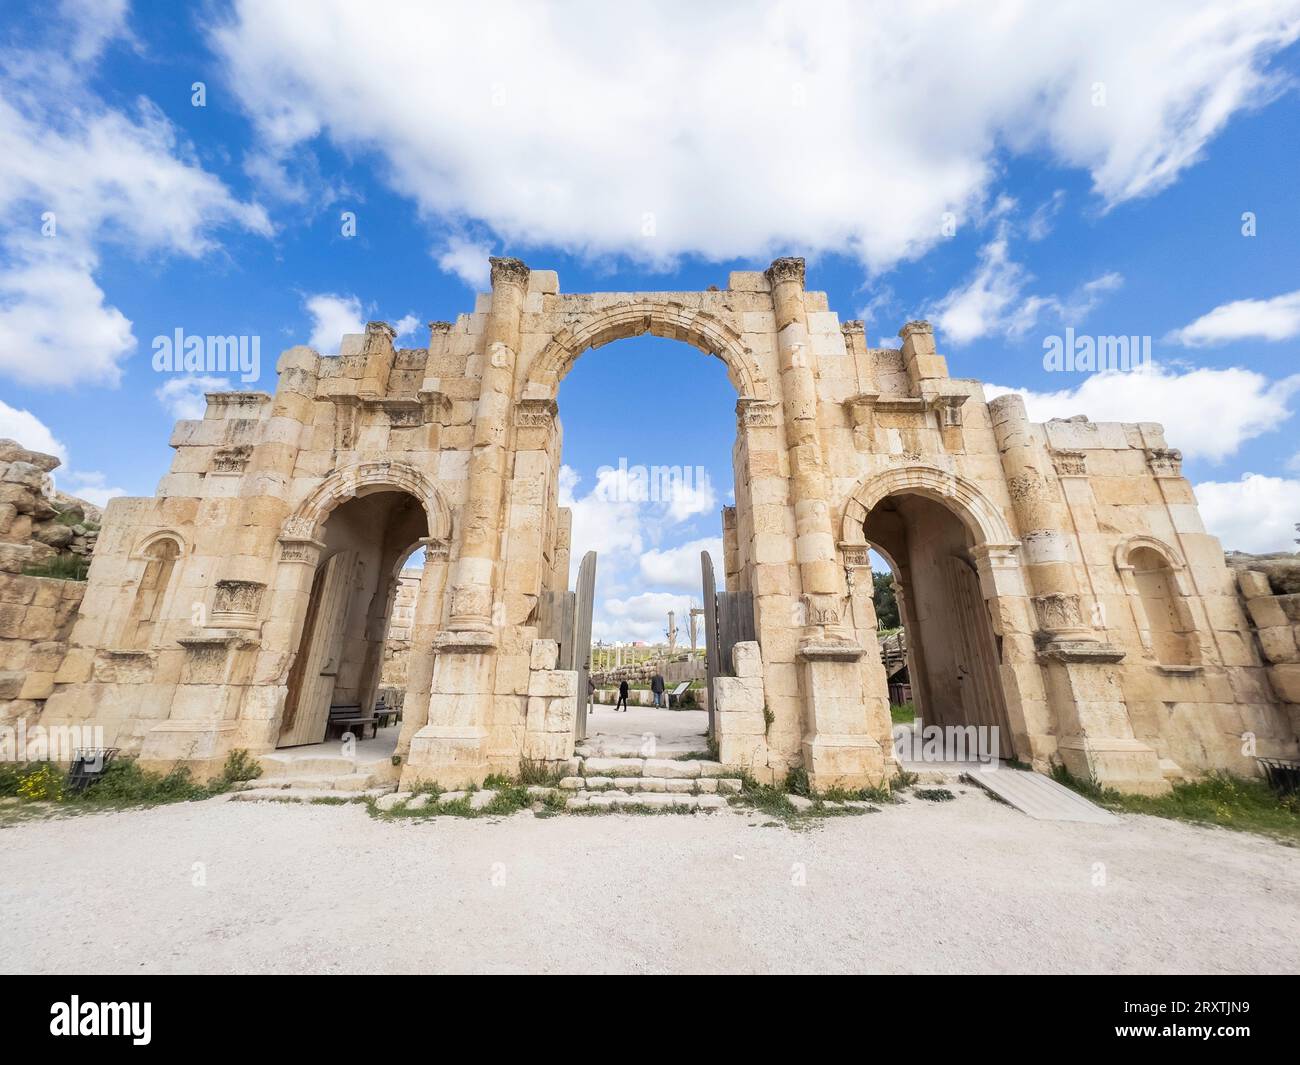 L'entrée intérieure de la place ovale, qui aurait été fondée en 331 av. J.-C. par Alexandre le Grand, Jerash, Jordanie, Moyen-Orient Banque D'Images